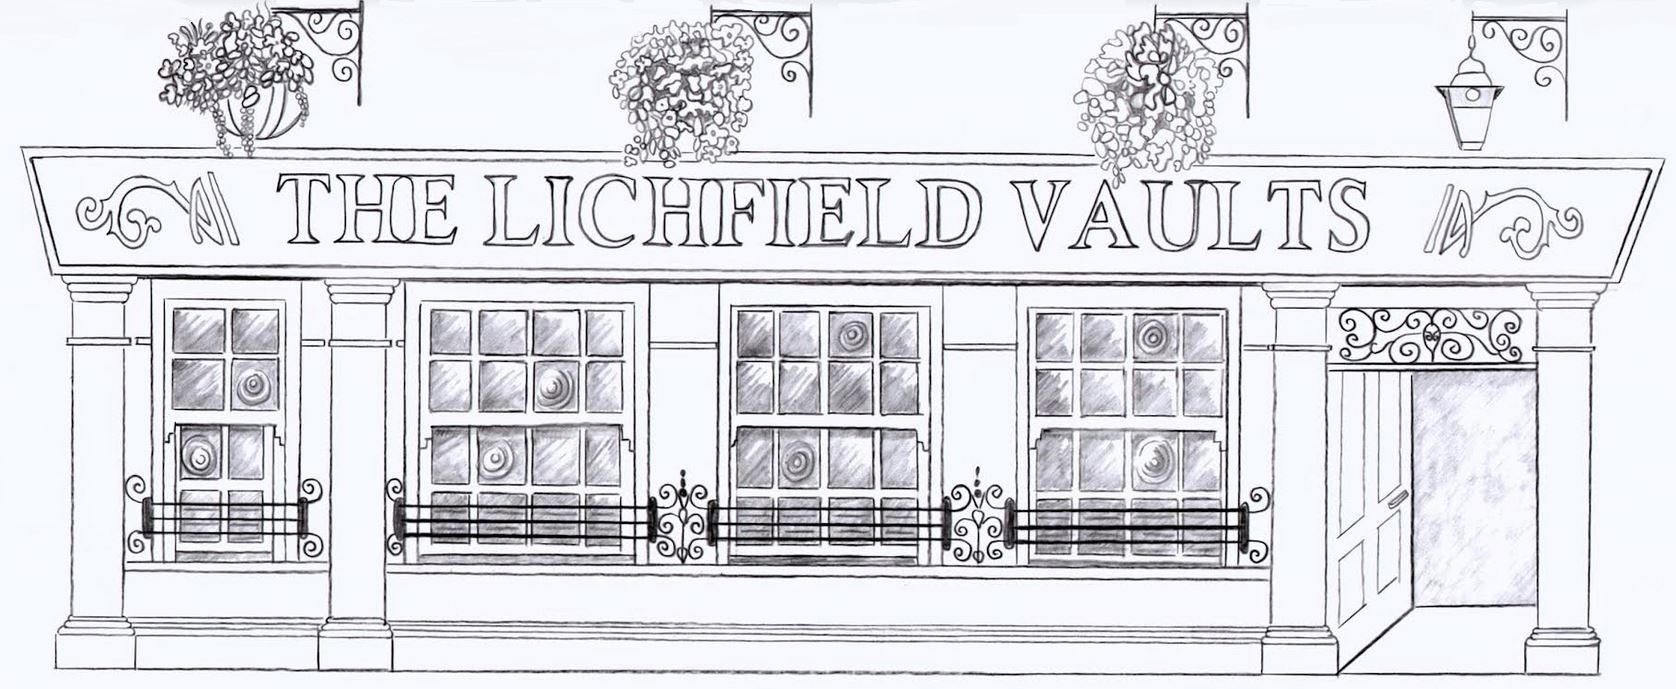 Lichfield Vaults, Hereford